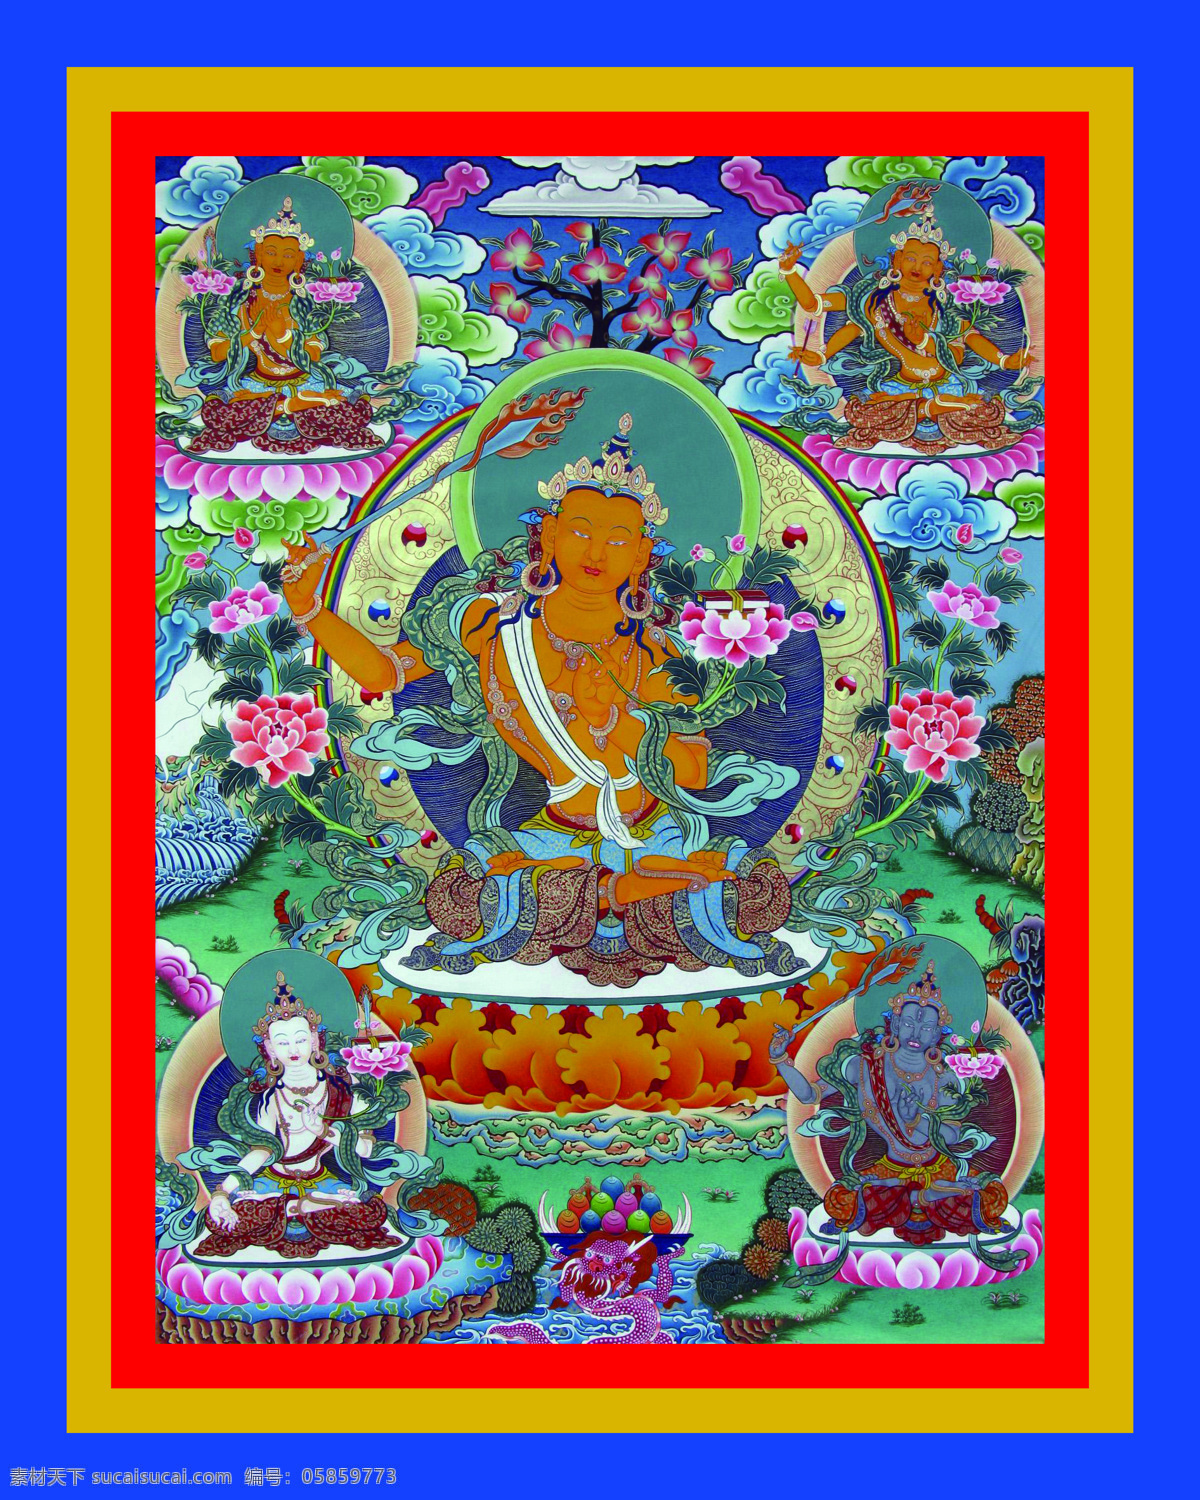 五文殊 唐卡 老唐卡 传承 西藏 藏传 佛教 密宗 法器 佛 菩萨 成就 成就者 大德 喇嘛 活佛 宗教信仰 文化艺术